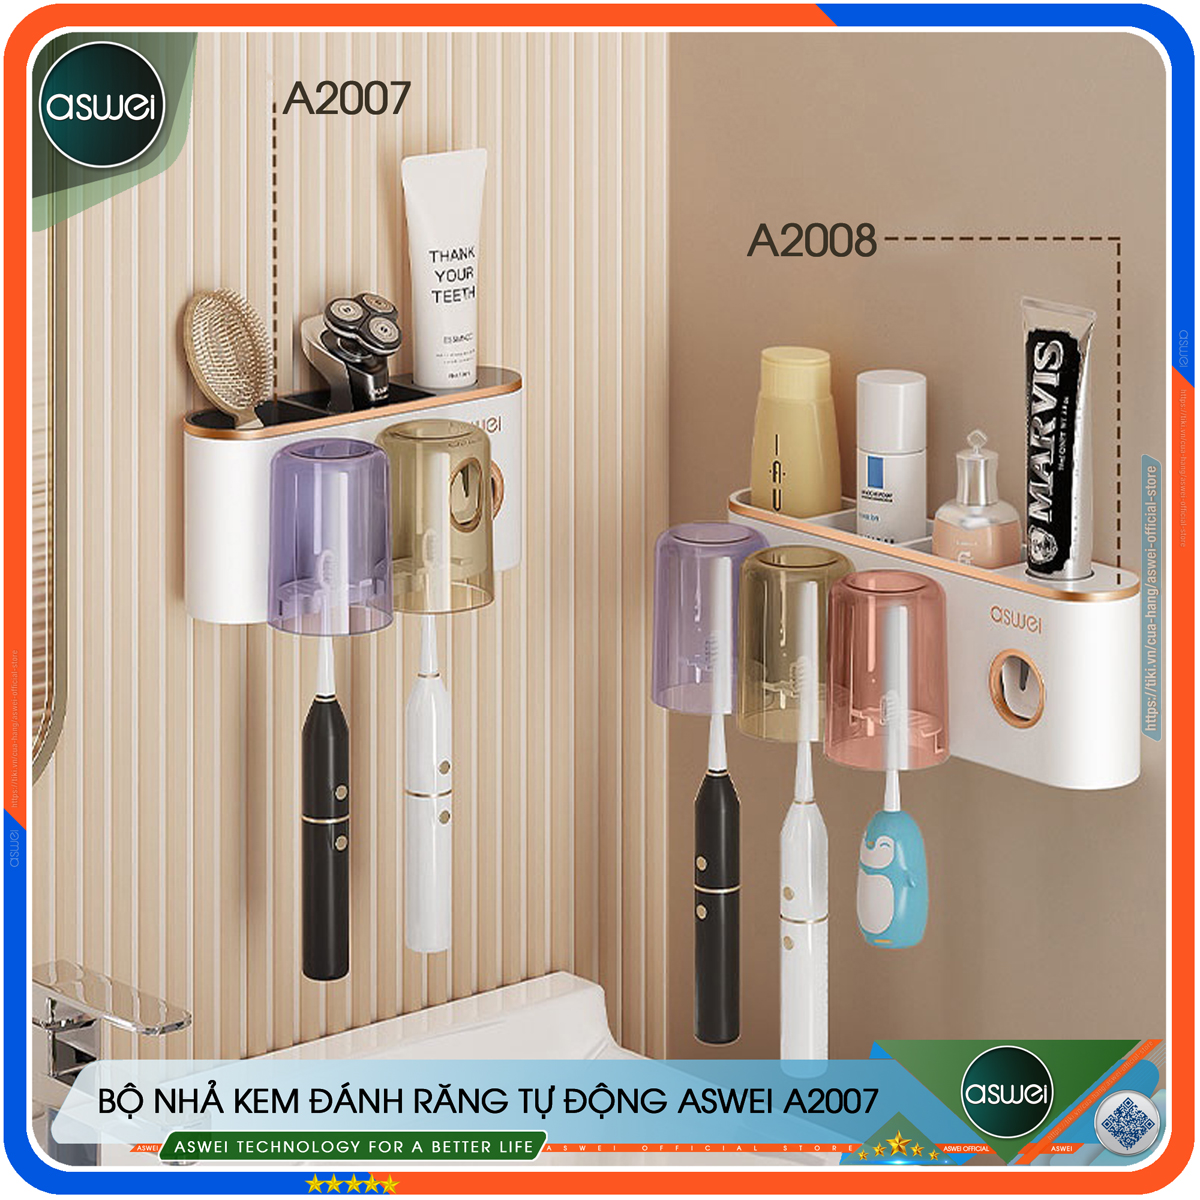 Bộ nhả kem đánh răng tự động ASWEI - Kệ để đồ nhà tắm A2007, A2008, A2009 tích hợp giá treo bàn chải và cốc - Chất liệu ABS cao cấp - Kệ nhà tắm ASWEI - Hàng chính hãng